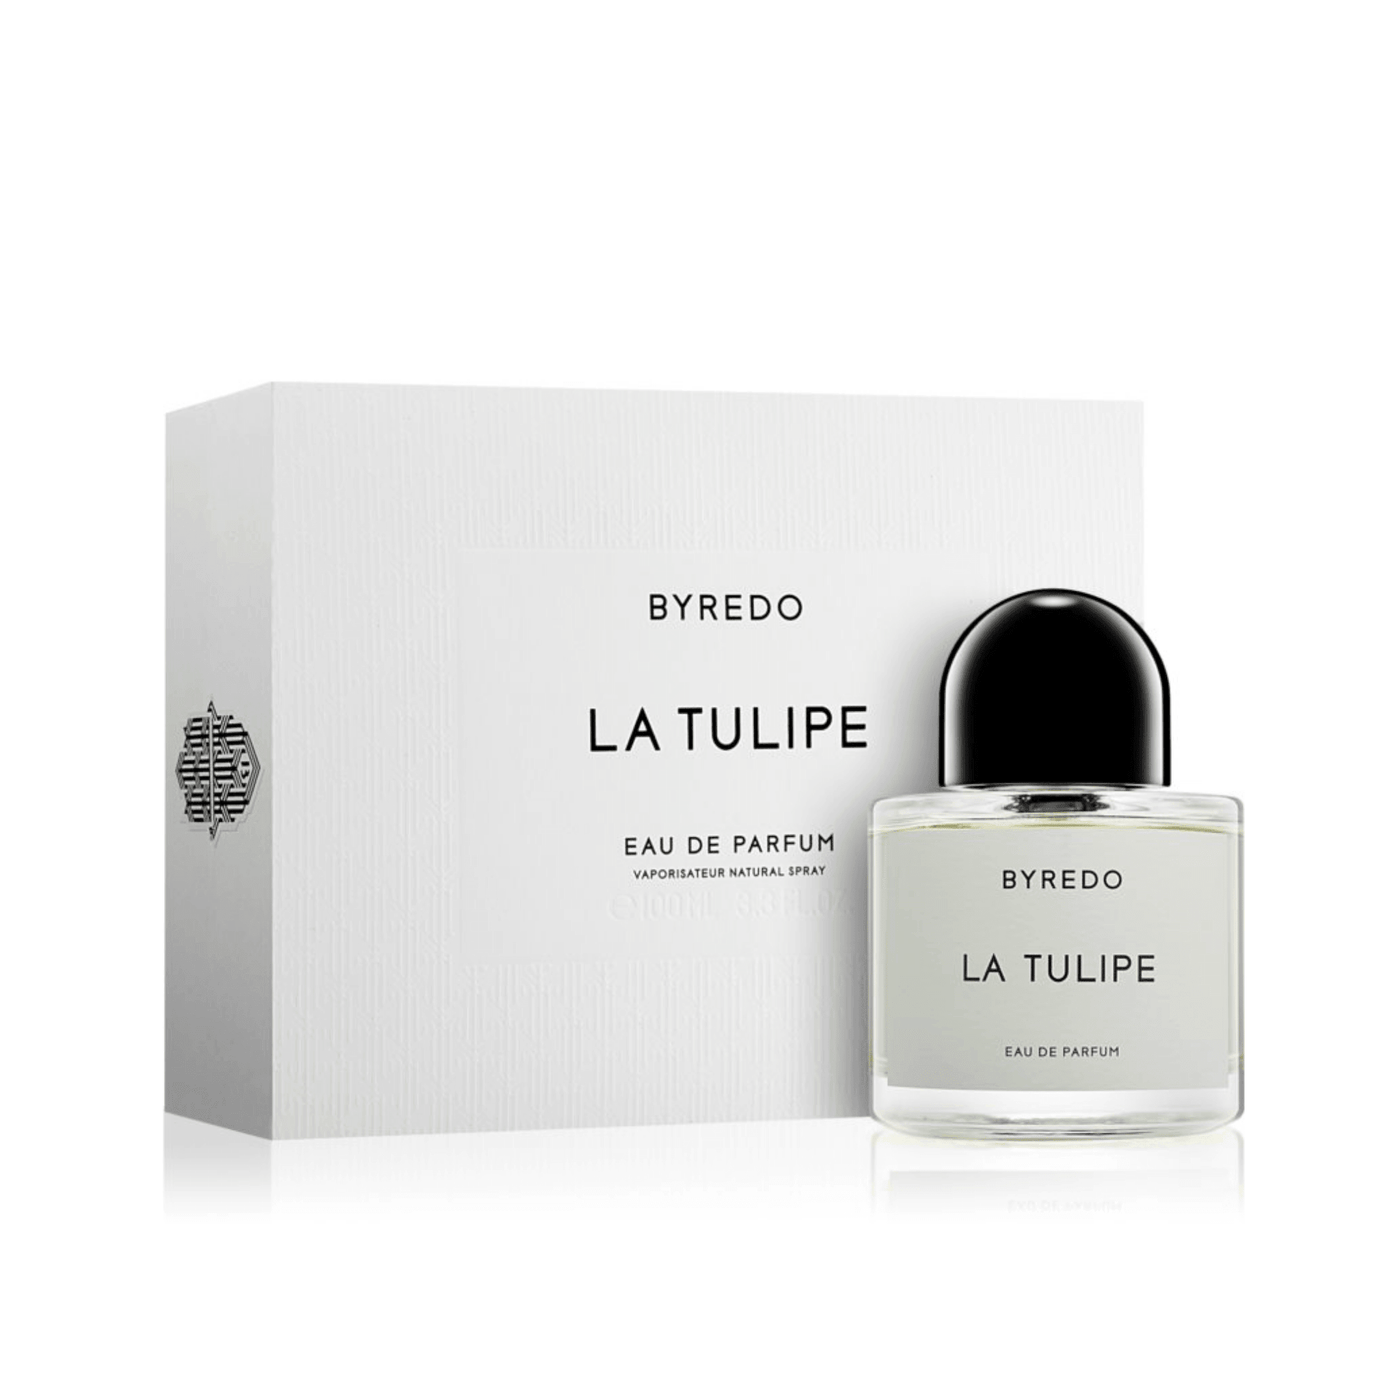 La Tulipe perfume buy